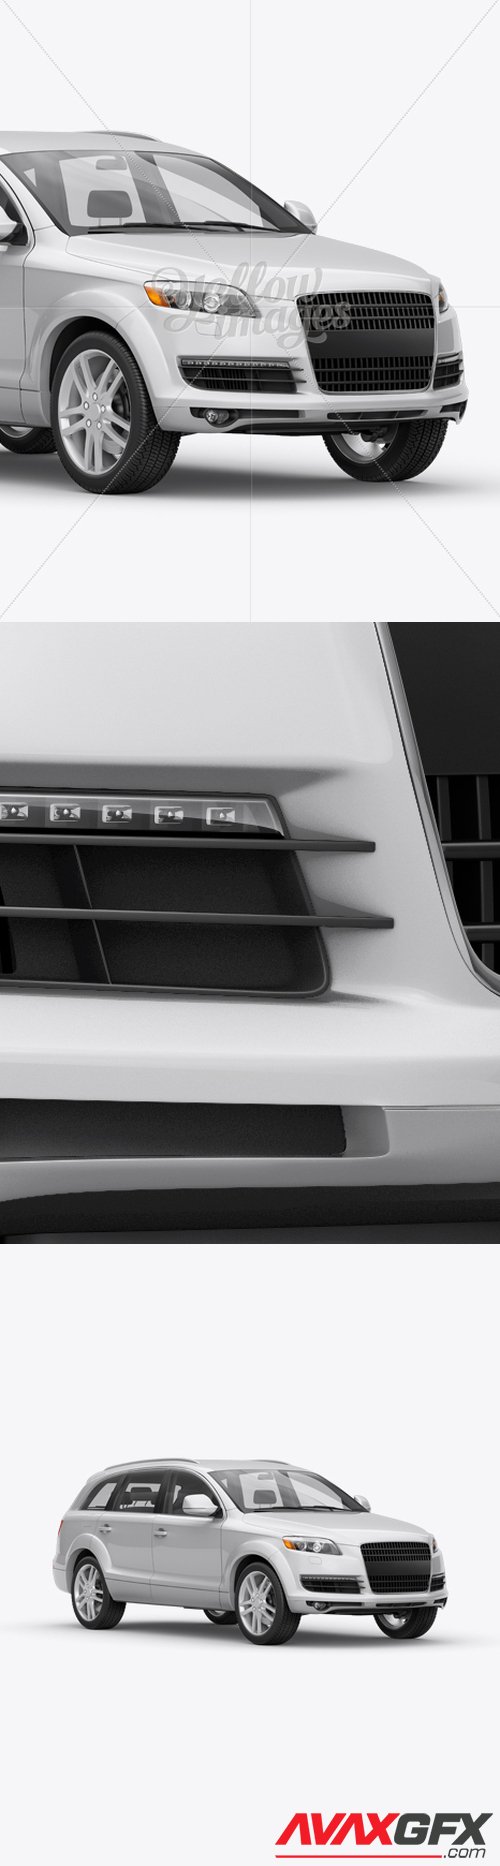 Audi Q7 Mockup - Halfside View 13189 TIF